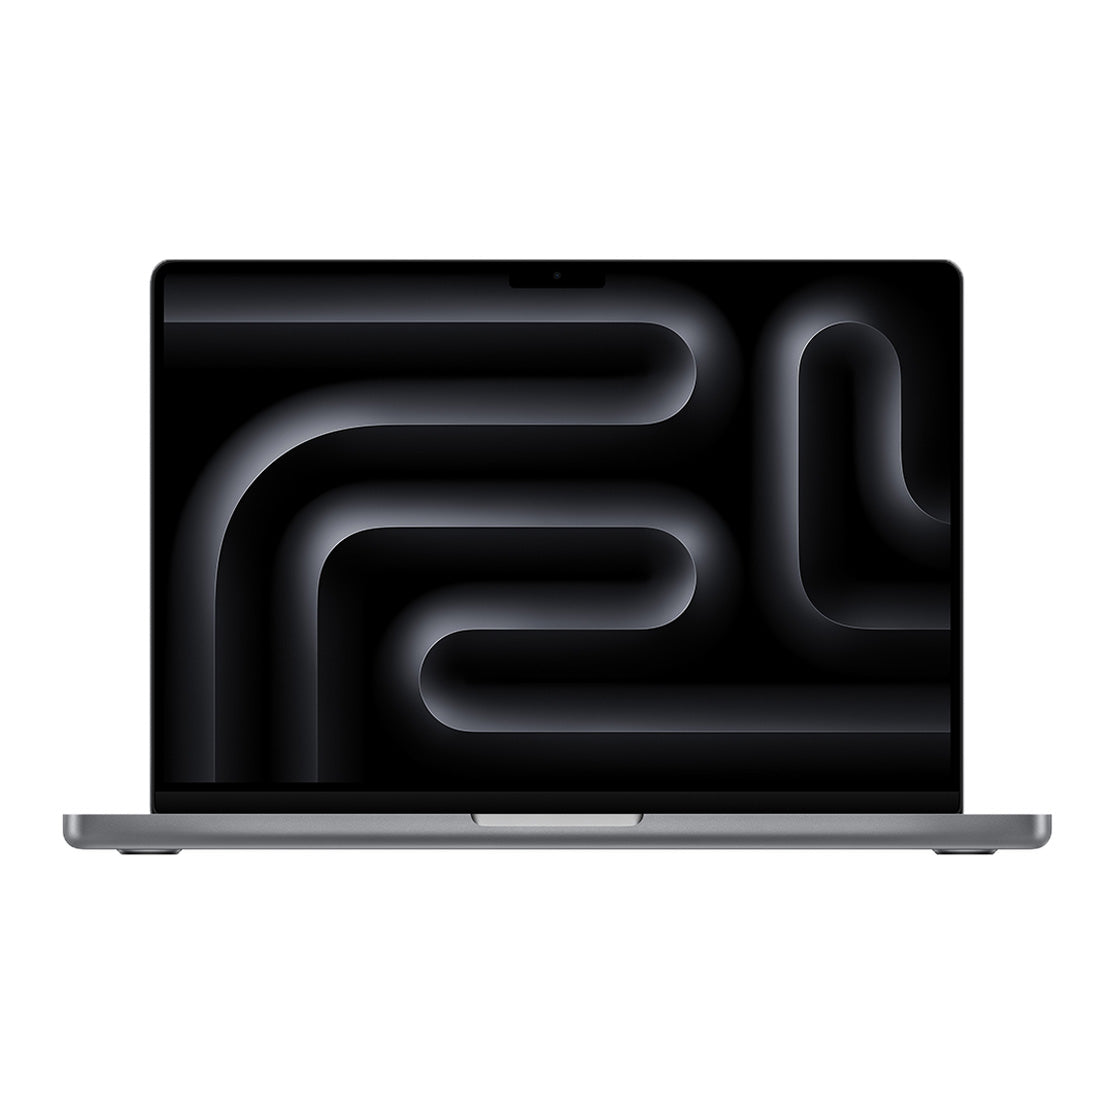 M3 MacBook charm, iconic design allure